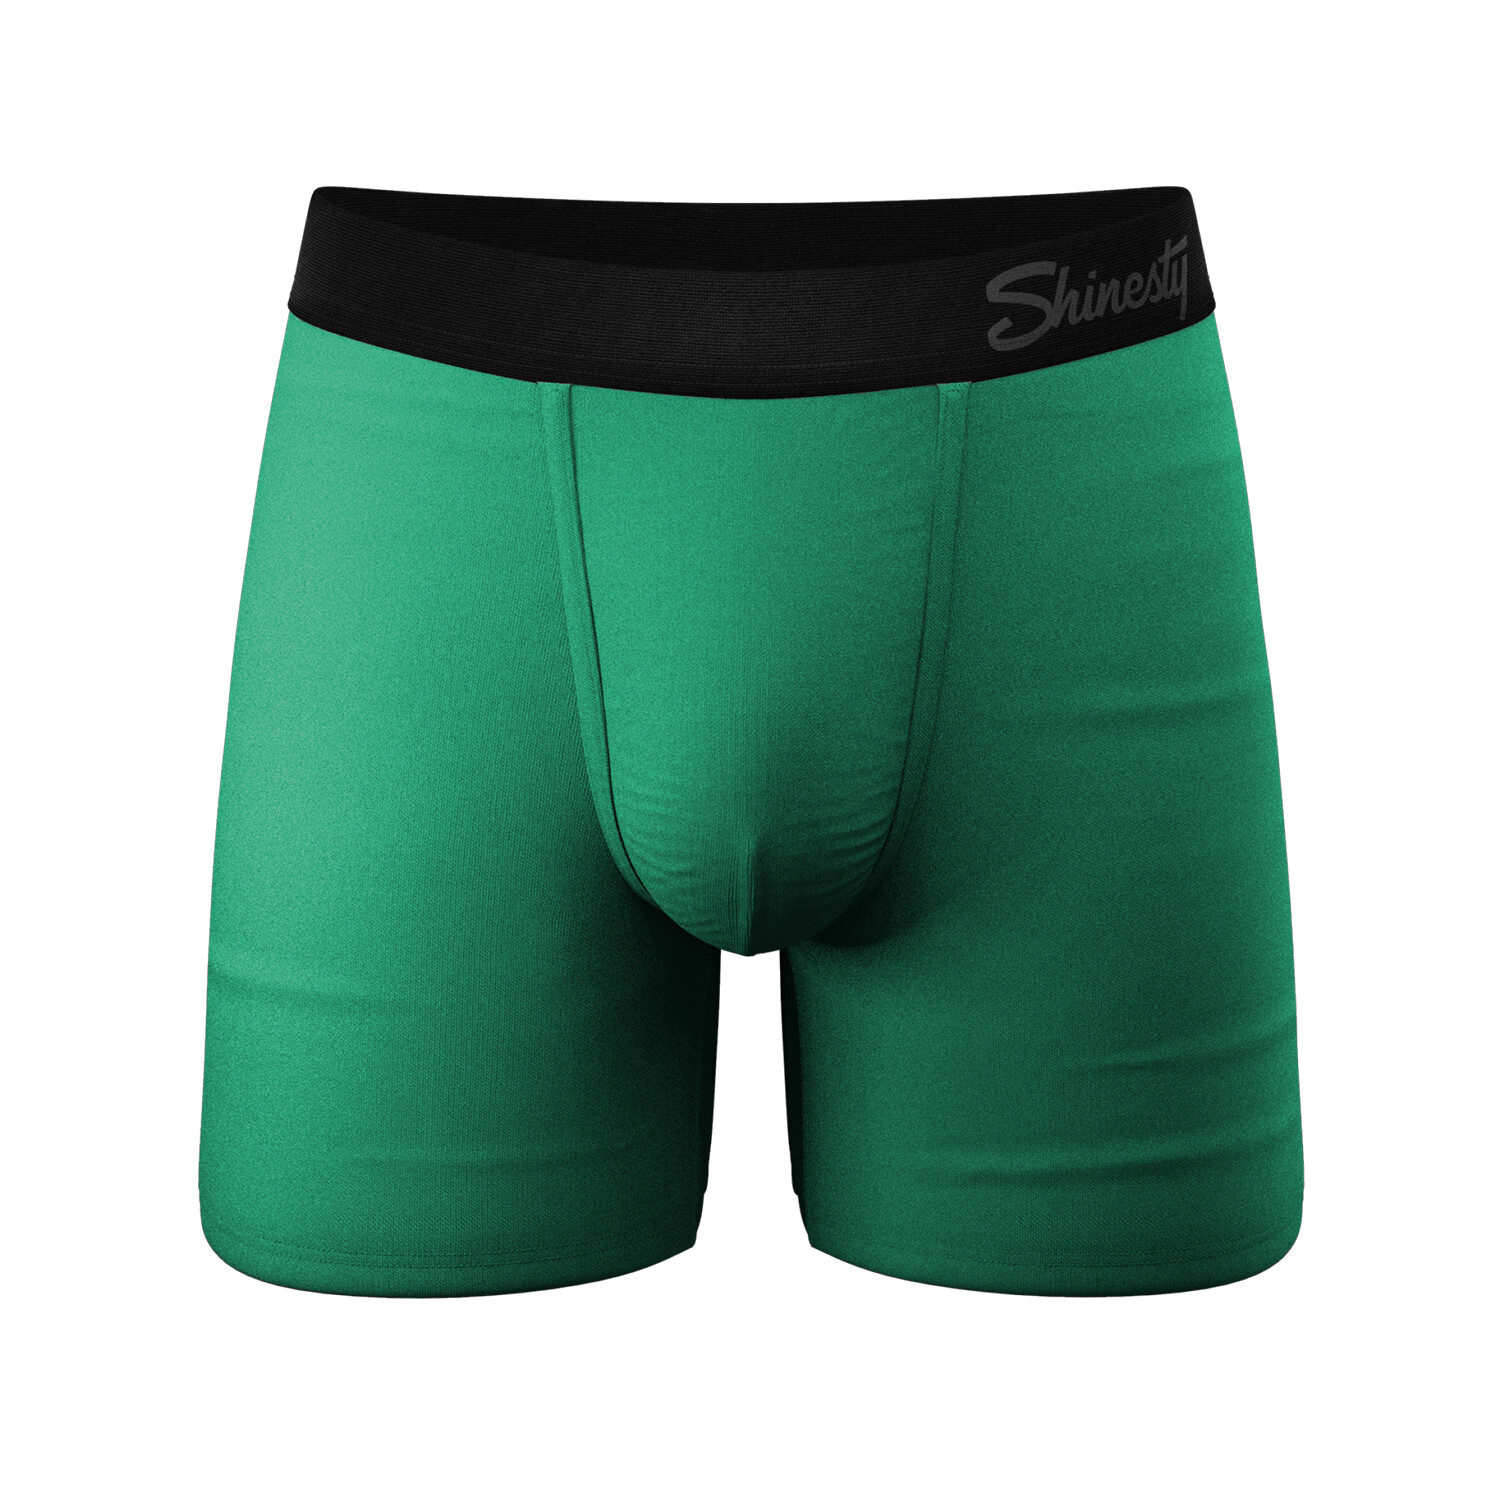  Shinesty Hammock Support Mens Underwear Boxer Briefs Men